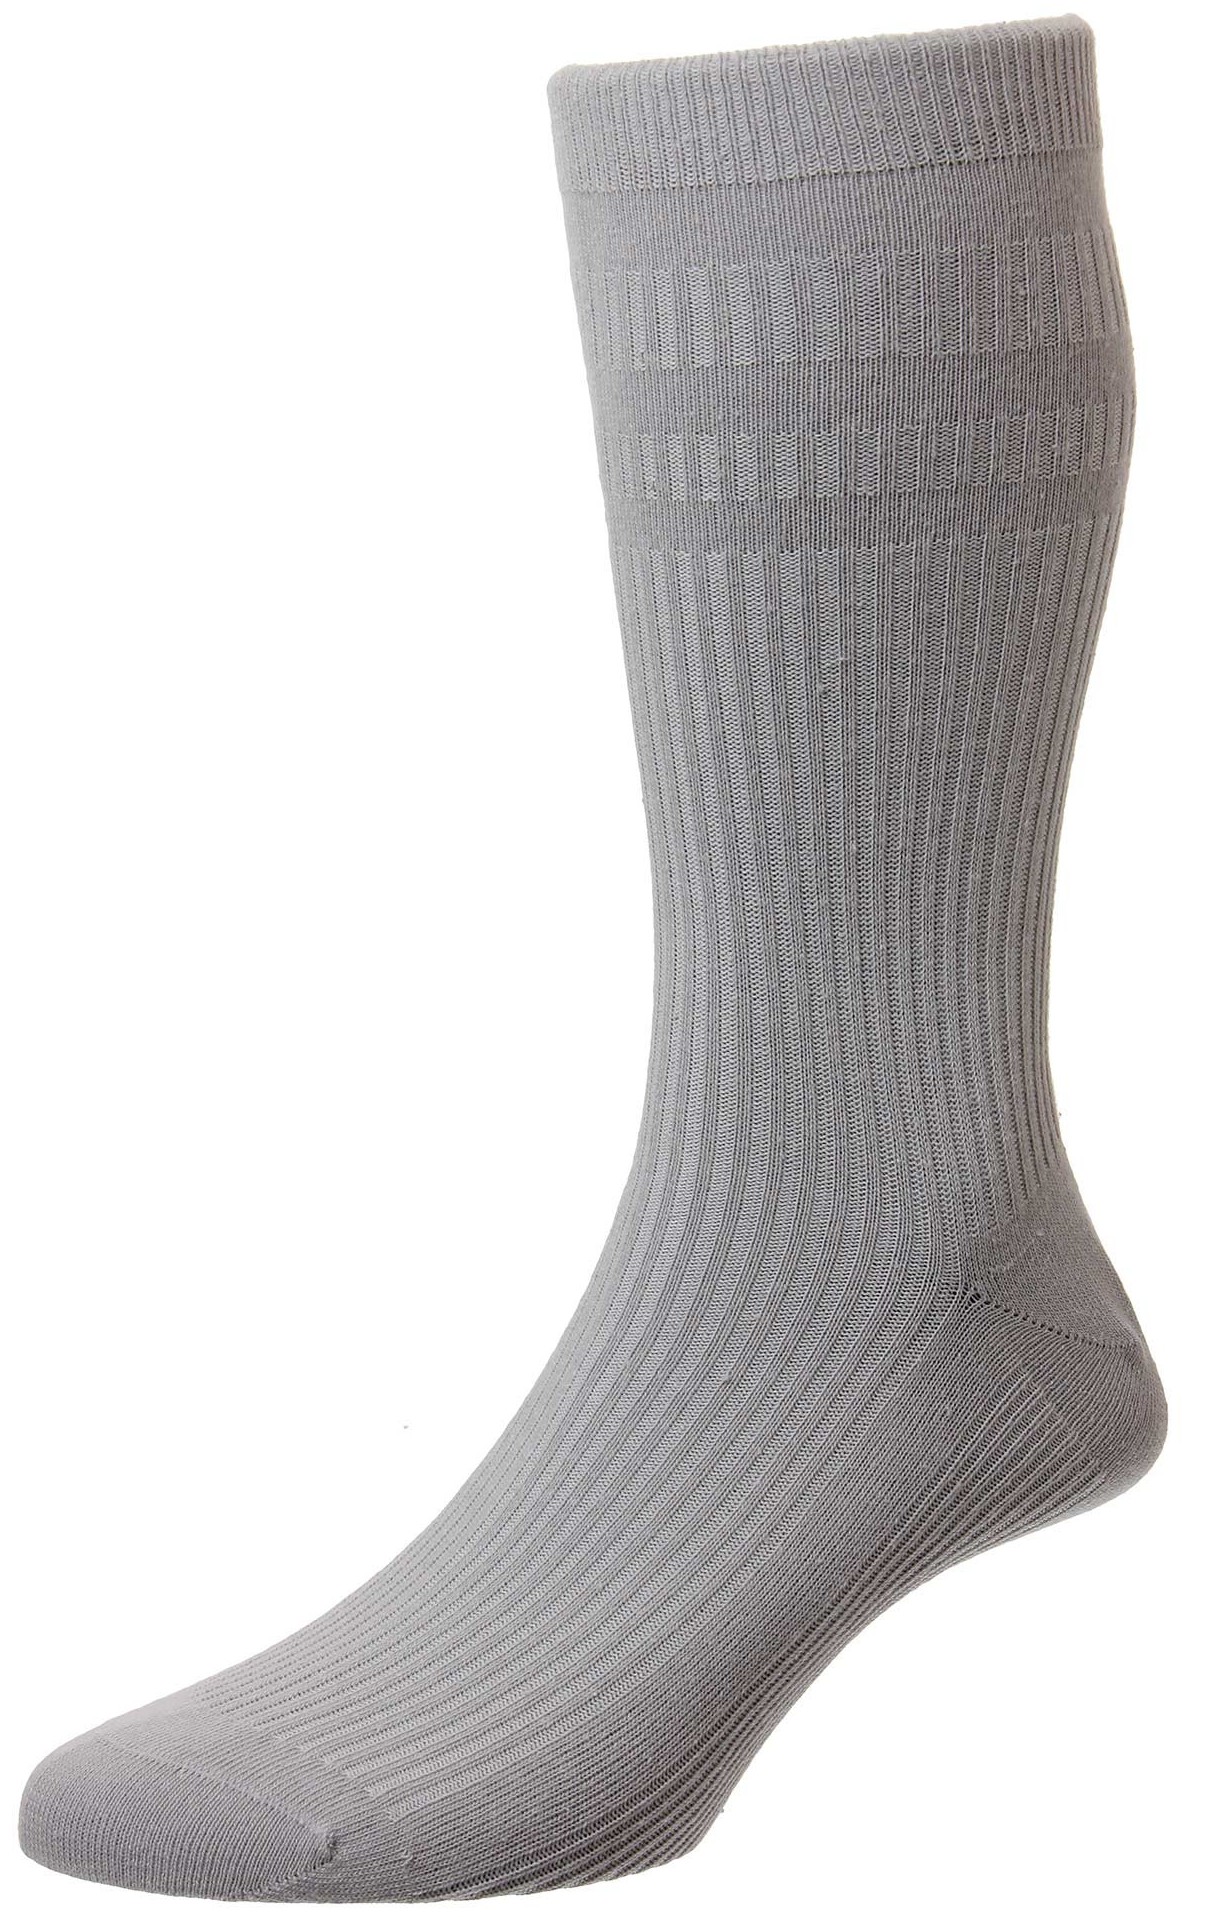 HJ Socks Softop HJ91 Silver Grey size 6-11